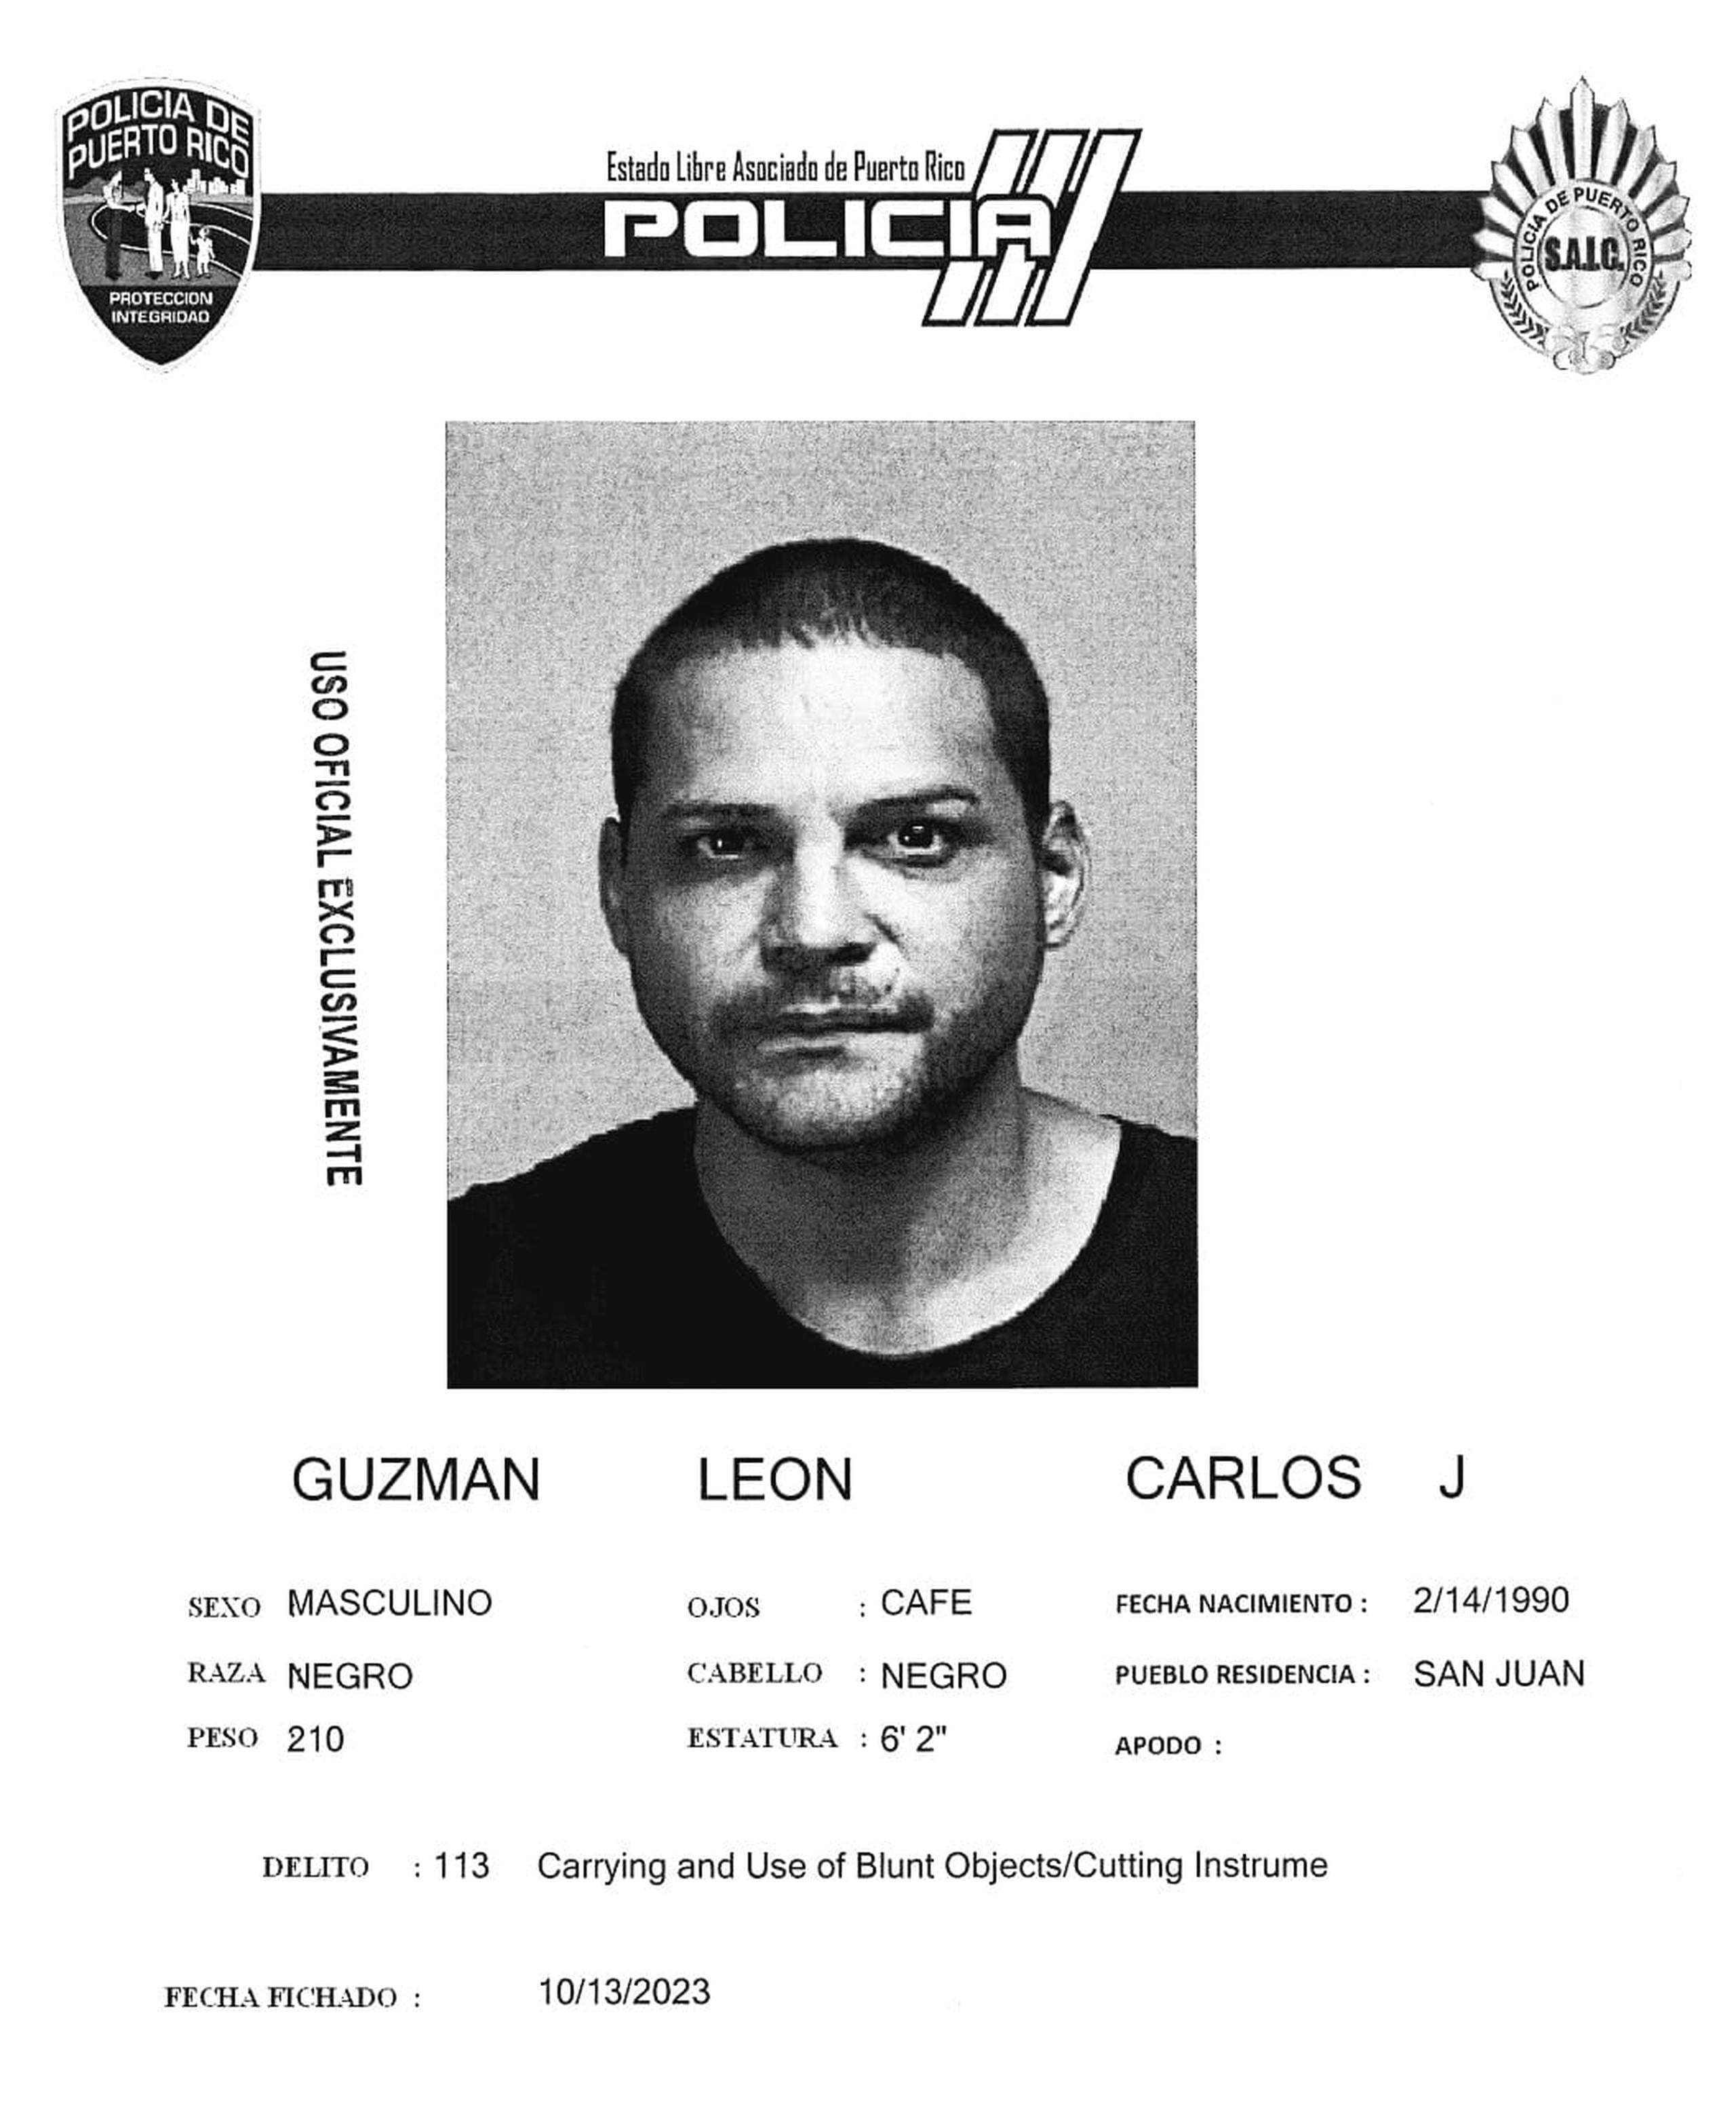 Carlos J. Guzmán León enfrenta cargos de por portación y uso de armas blancas, alteración a la paz y exposiciones obscenas.